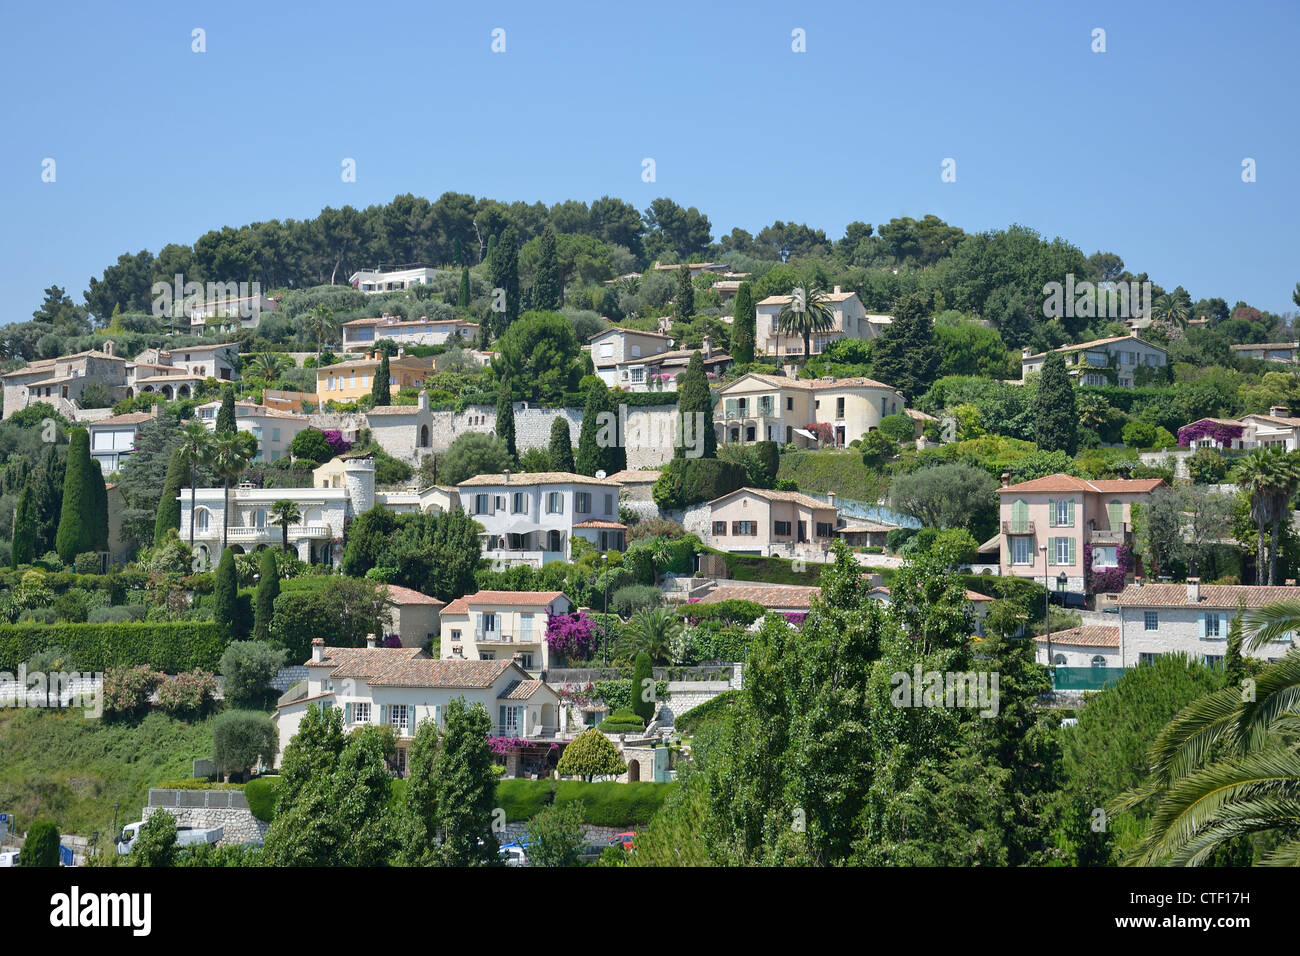 Häuser am Hang von Old Town walls, Saint-Paul de Vence, Côte d ' Azur, Alpes-Maritimes, Provence-Alpes-Côte d ' Azur, Frankreich Stockfoto